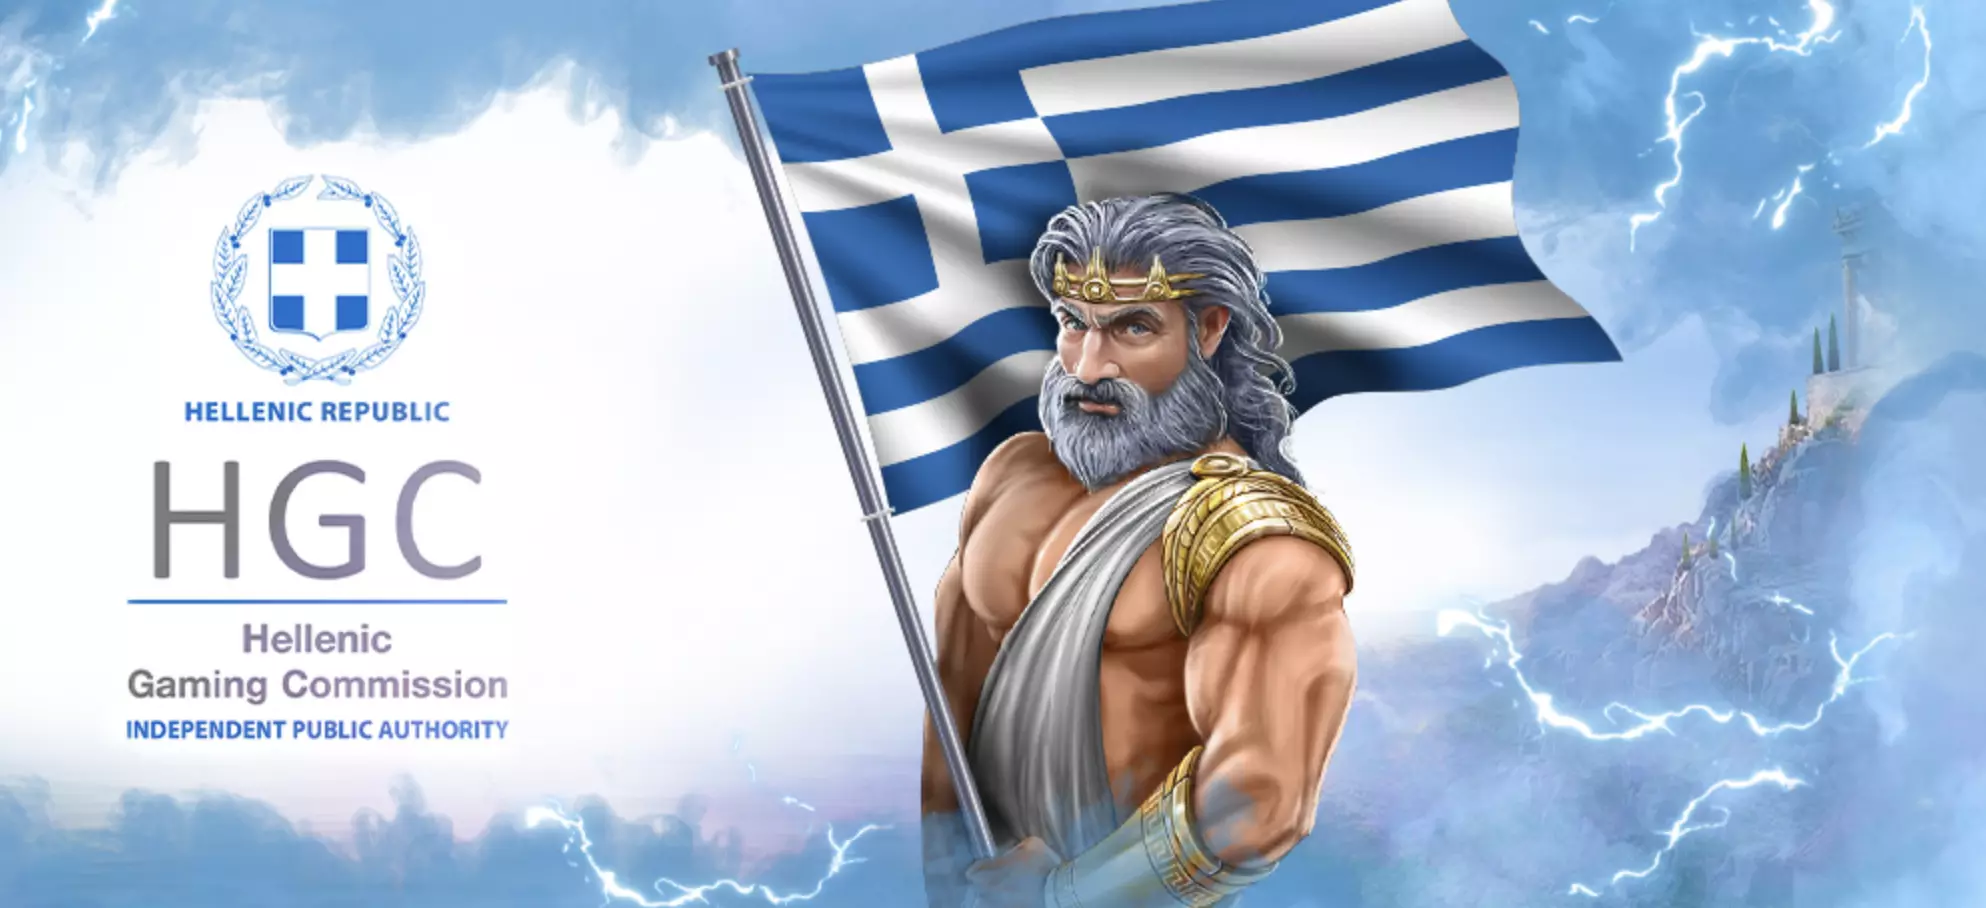 The Greek gaming authority EKAZ